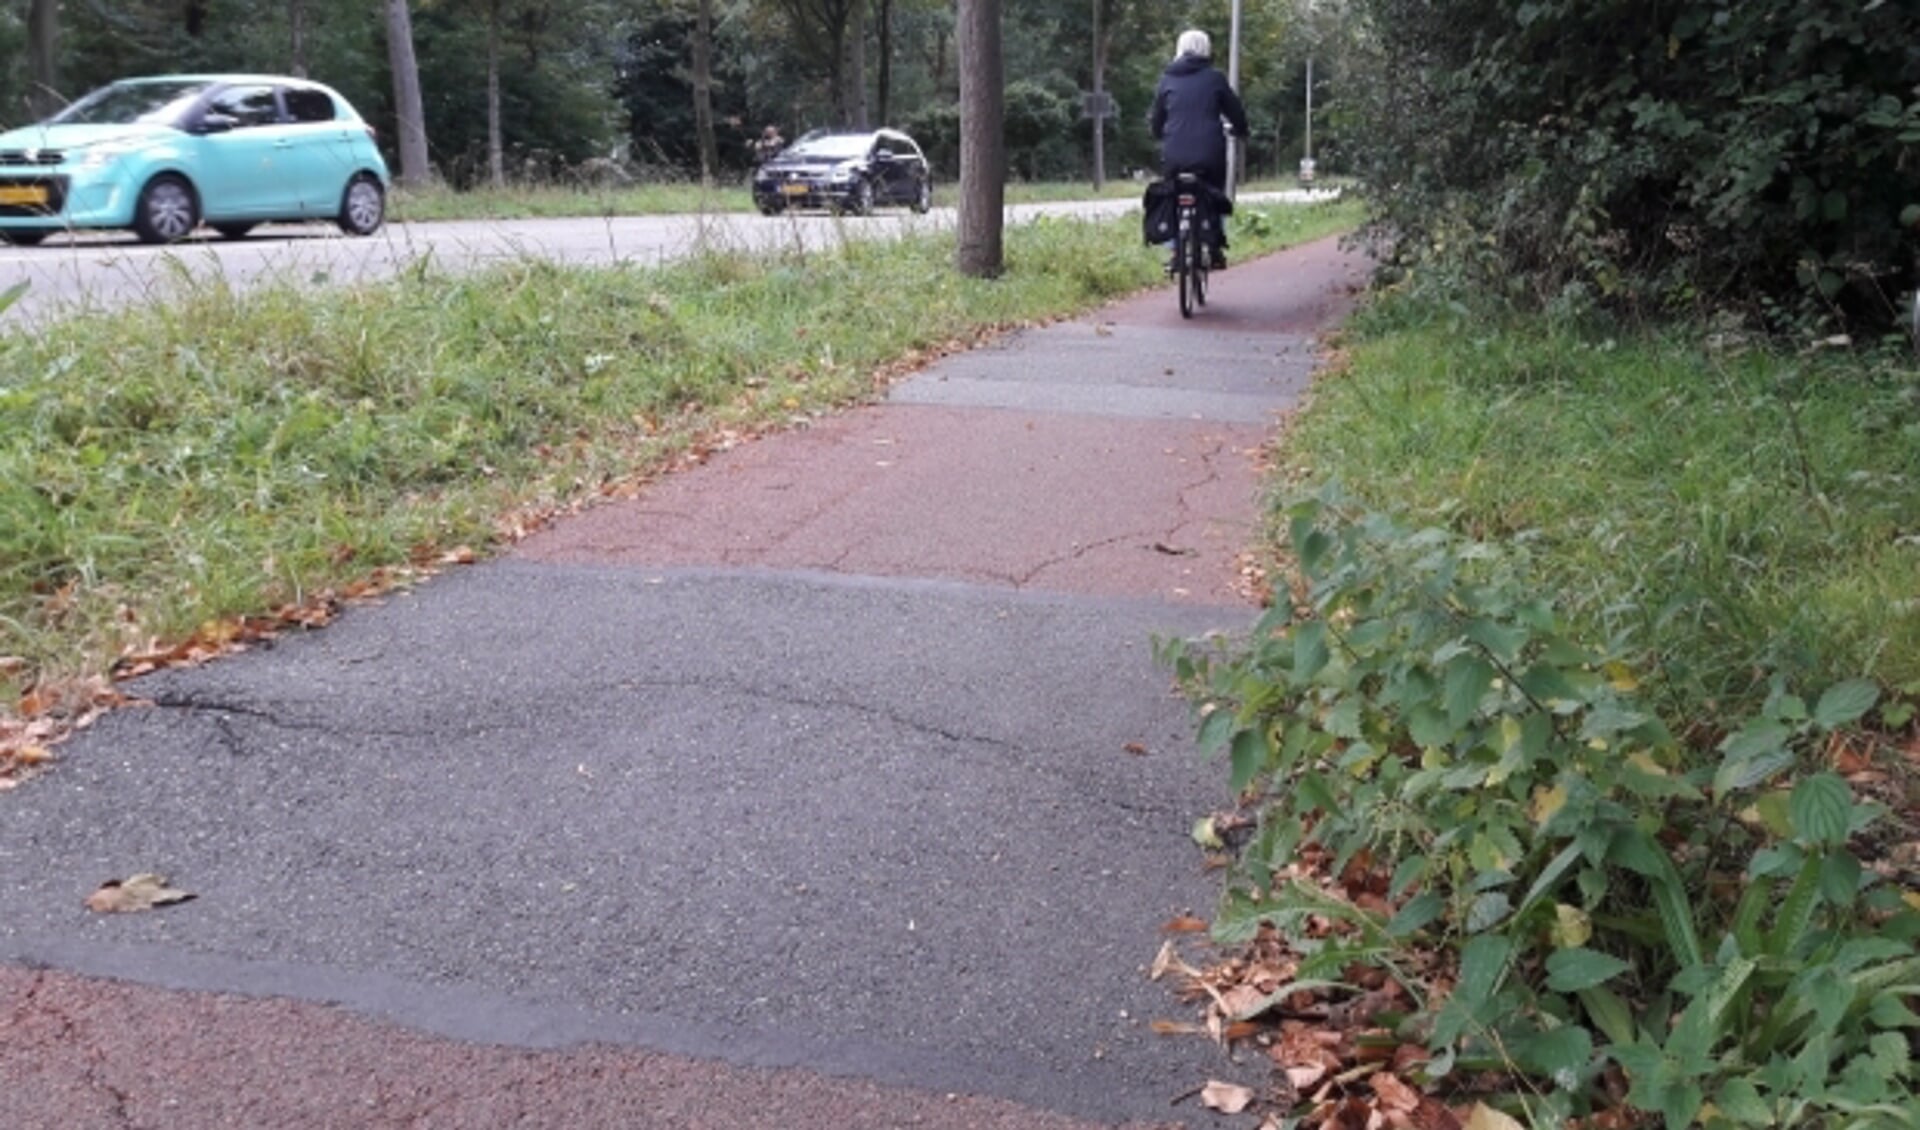 De fietspaden langs de Keerkring zijn al jaren een bron van ergernis voor fietsers. (Foto: Jos Jacobs)